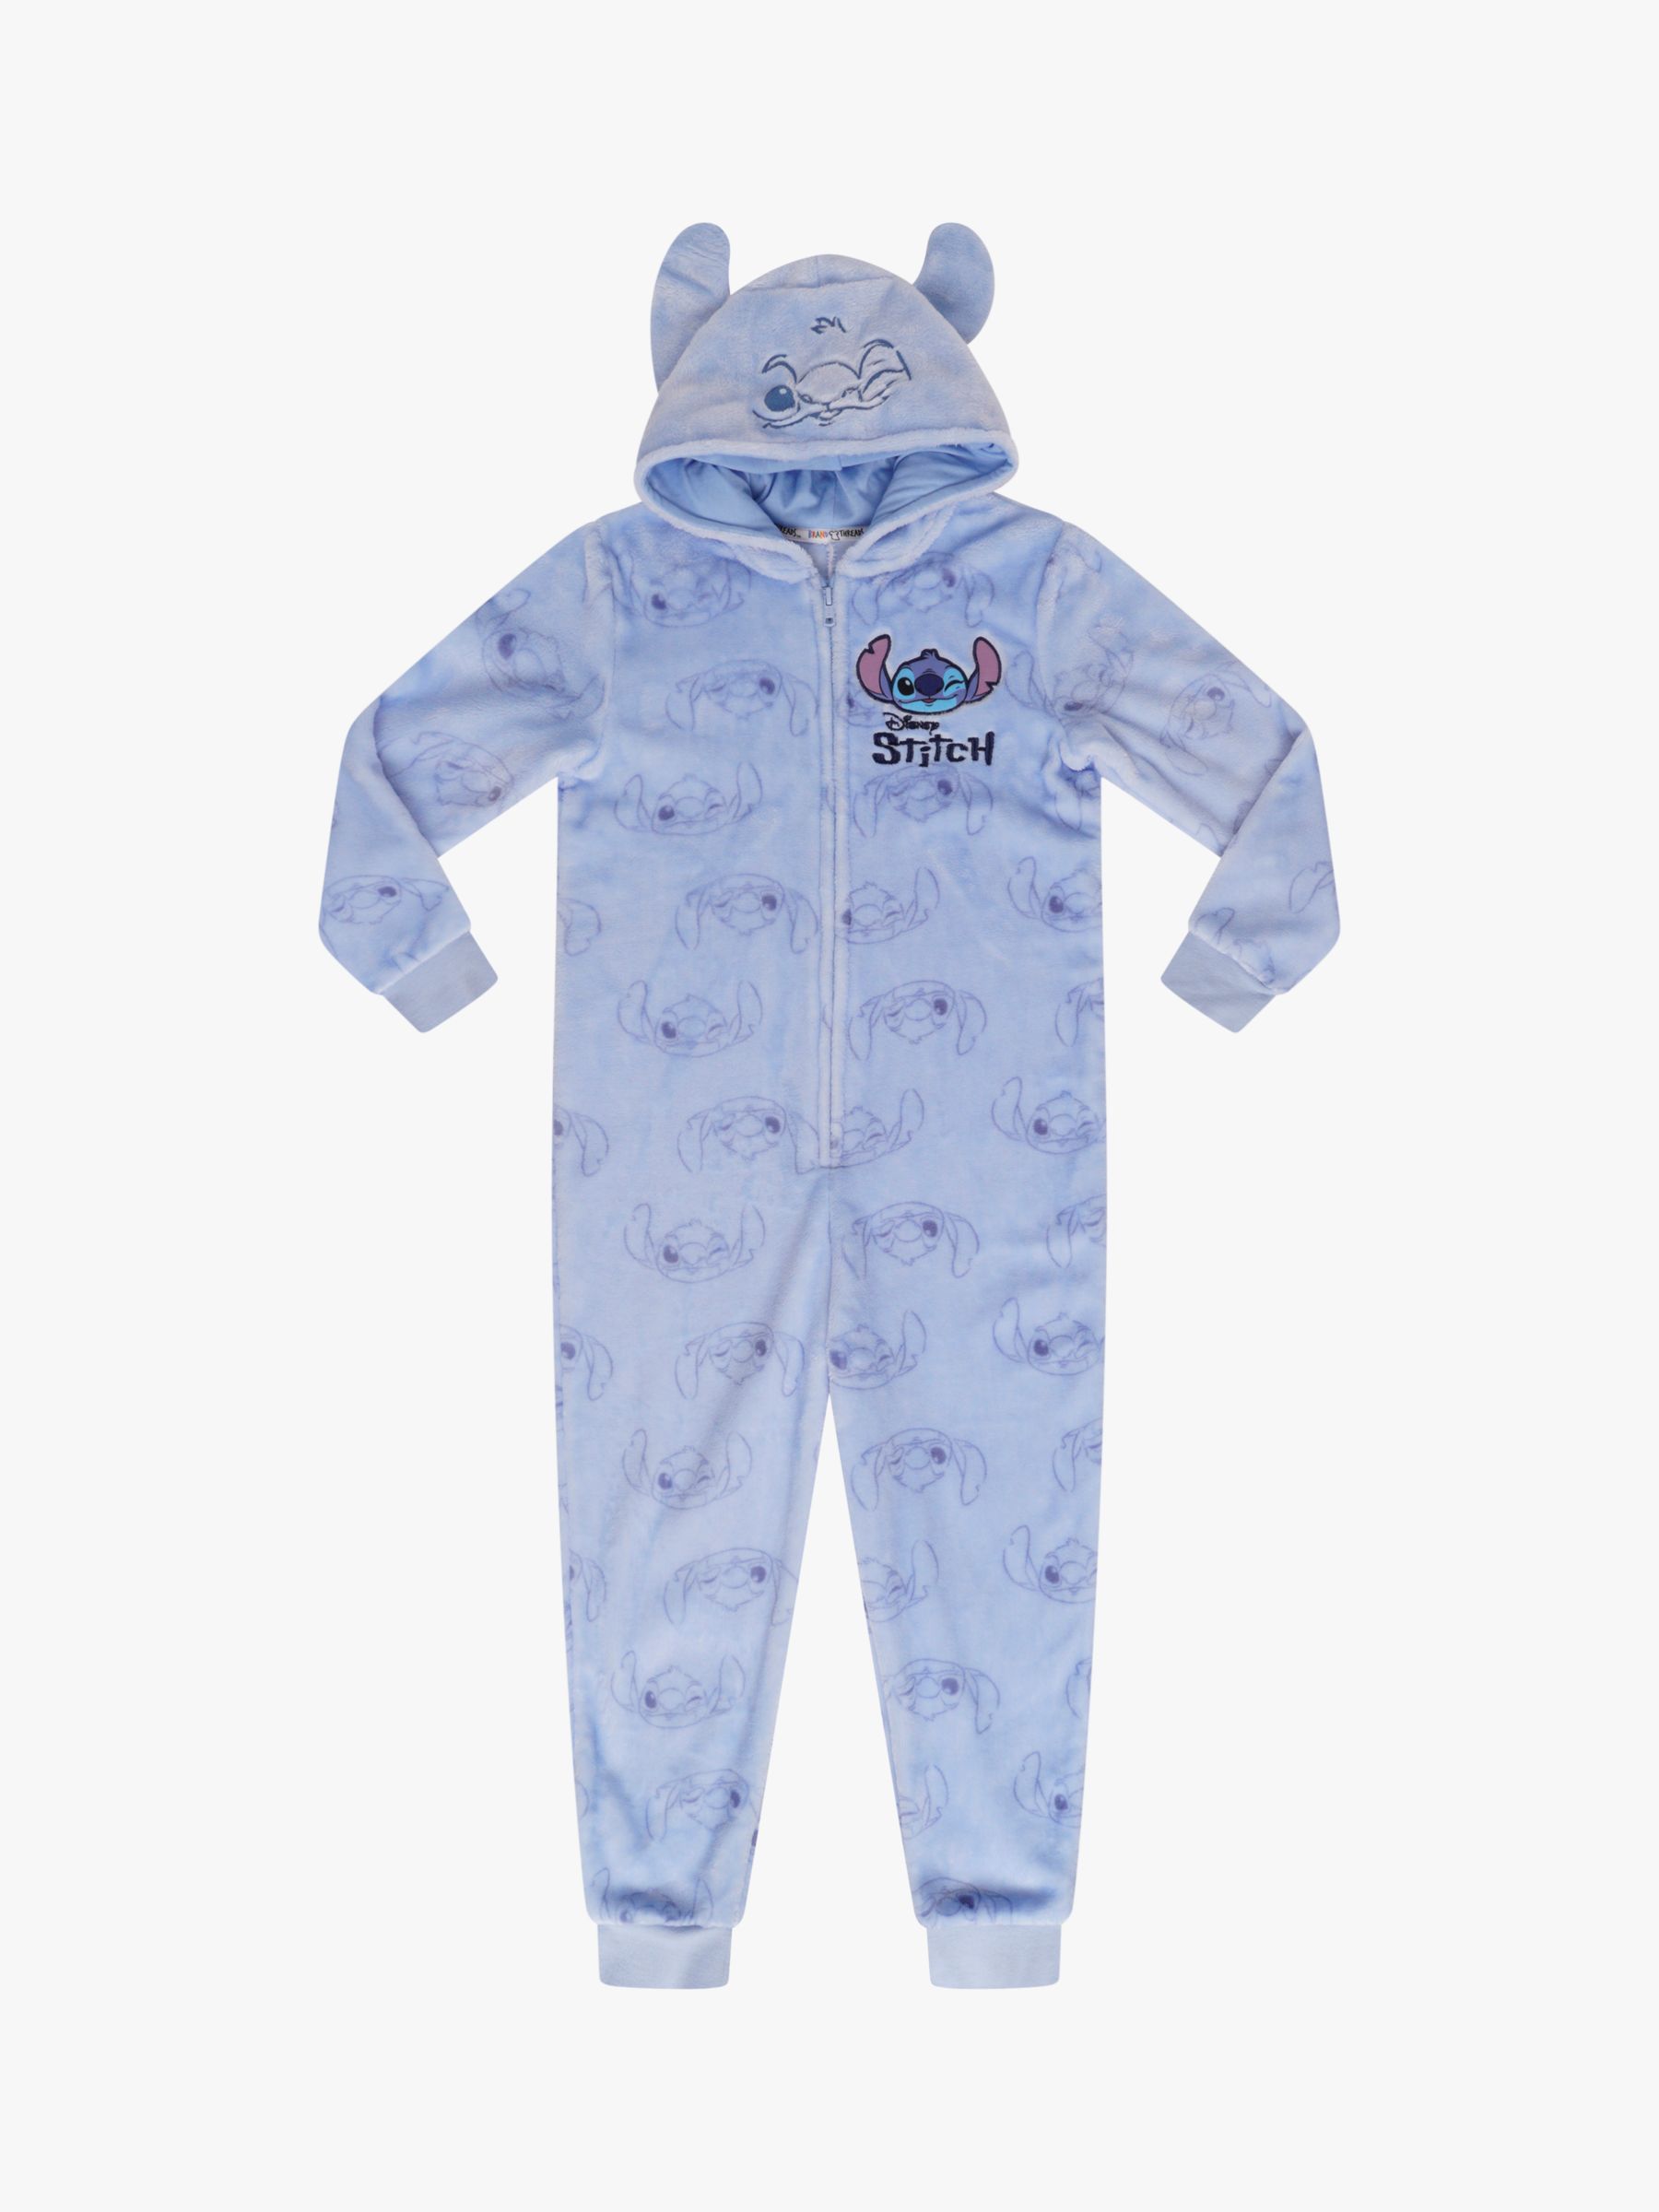 Buy Brand Threads Kids' Disney Stitch Hooded Onesie, Blue Online at johnlewis.com